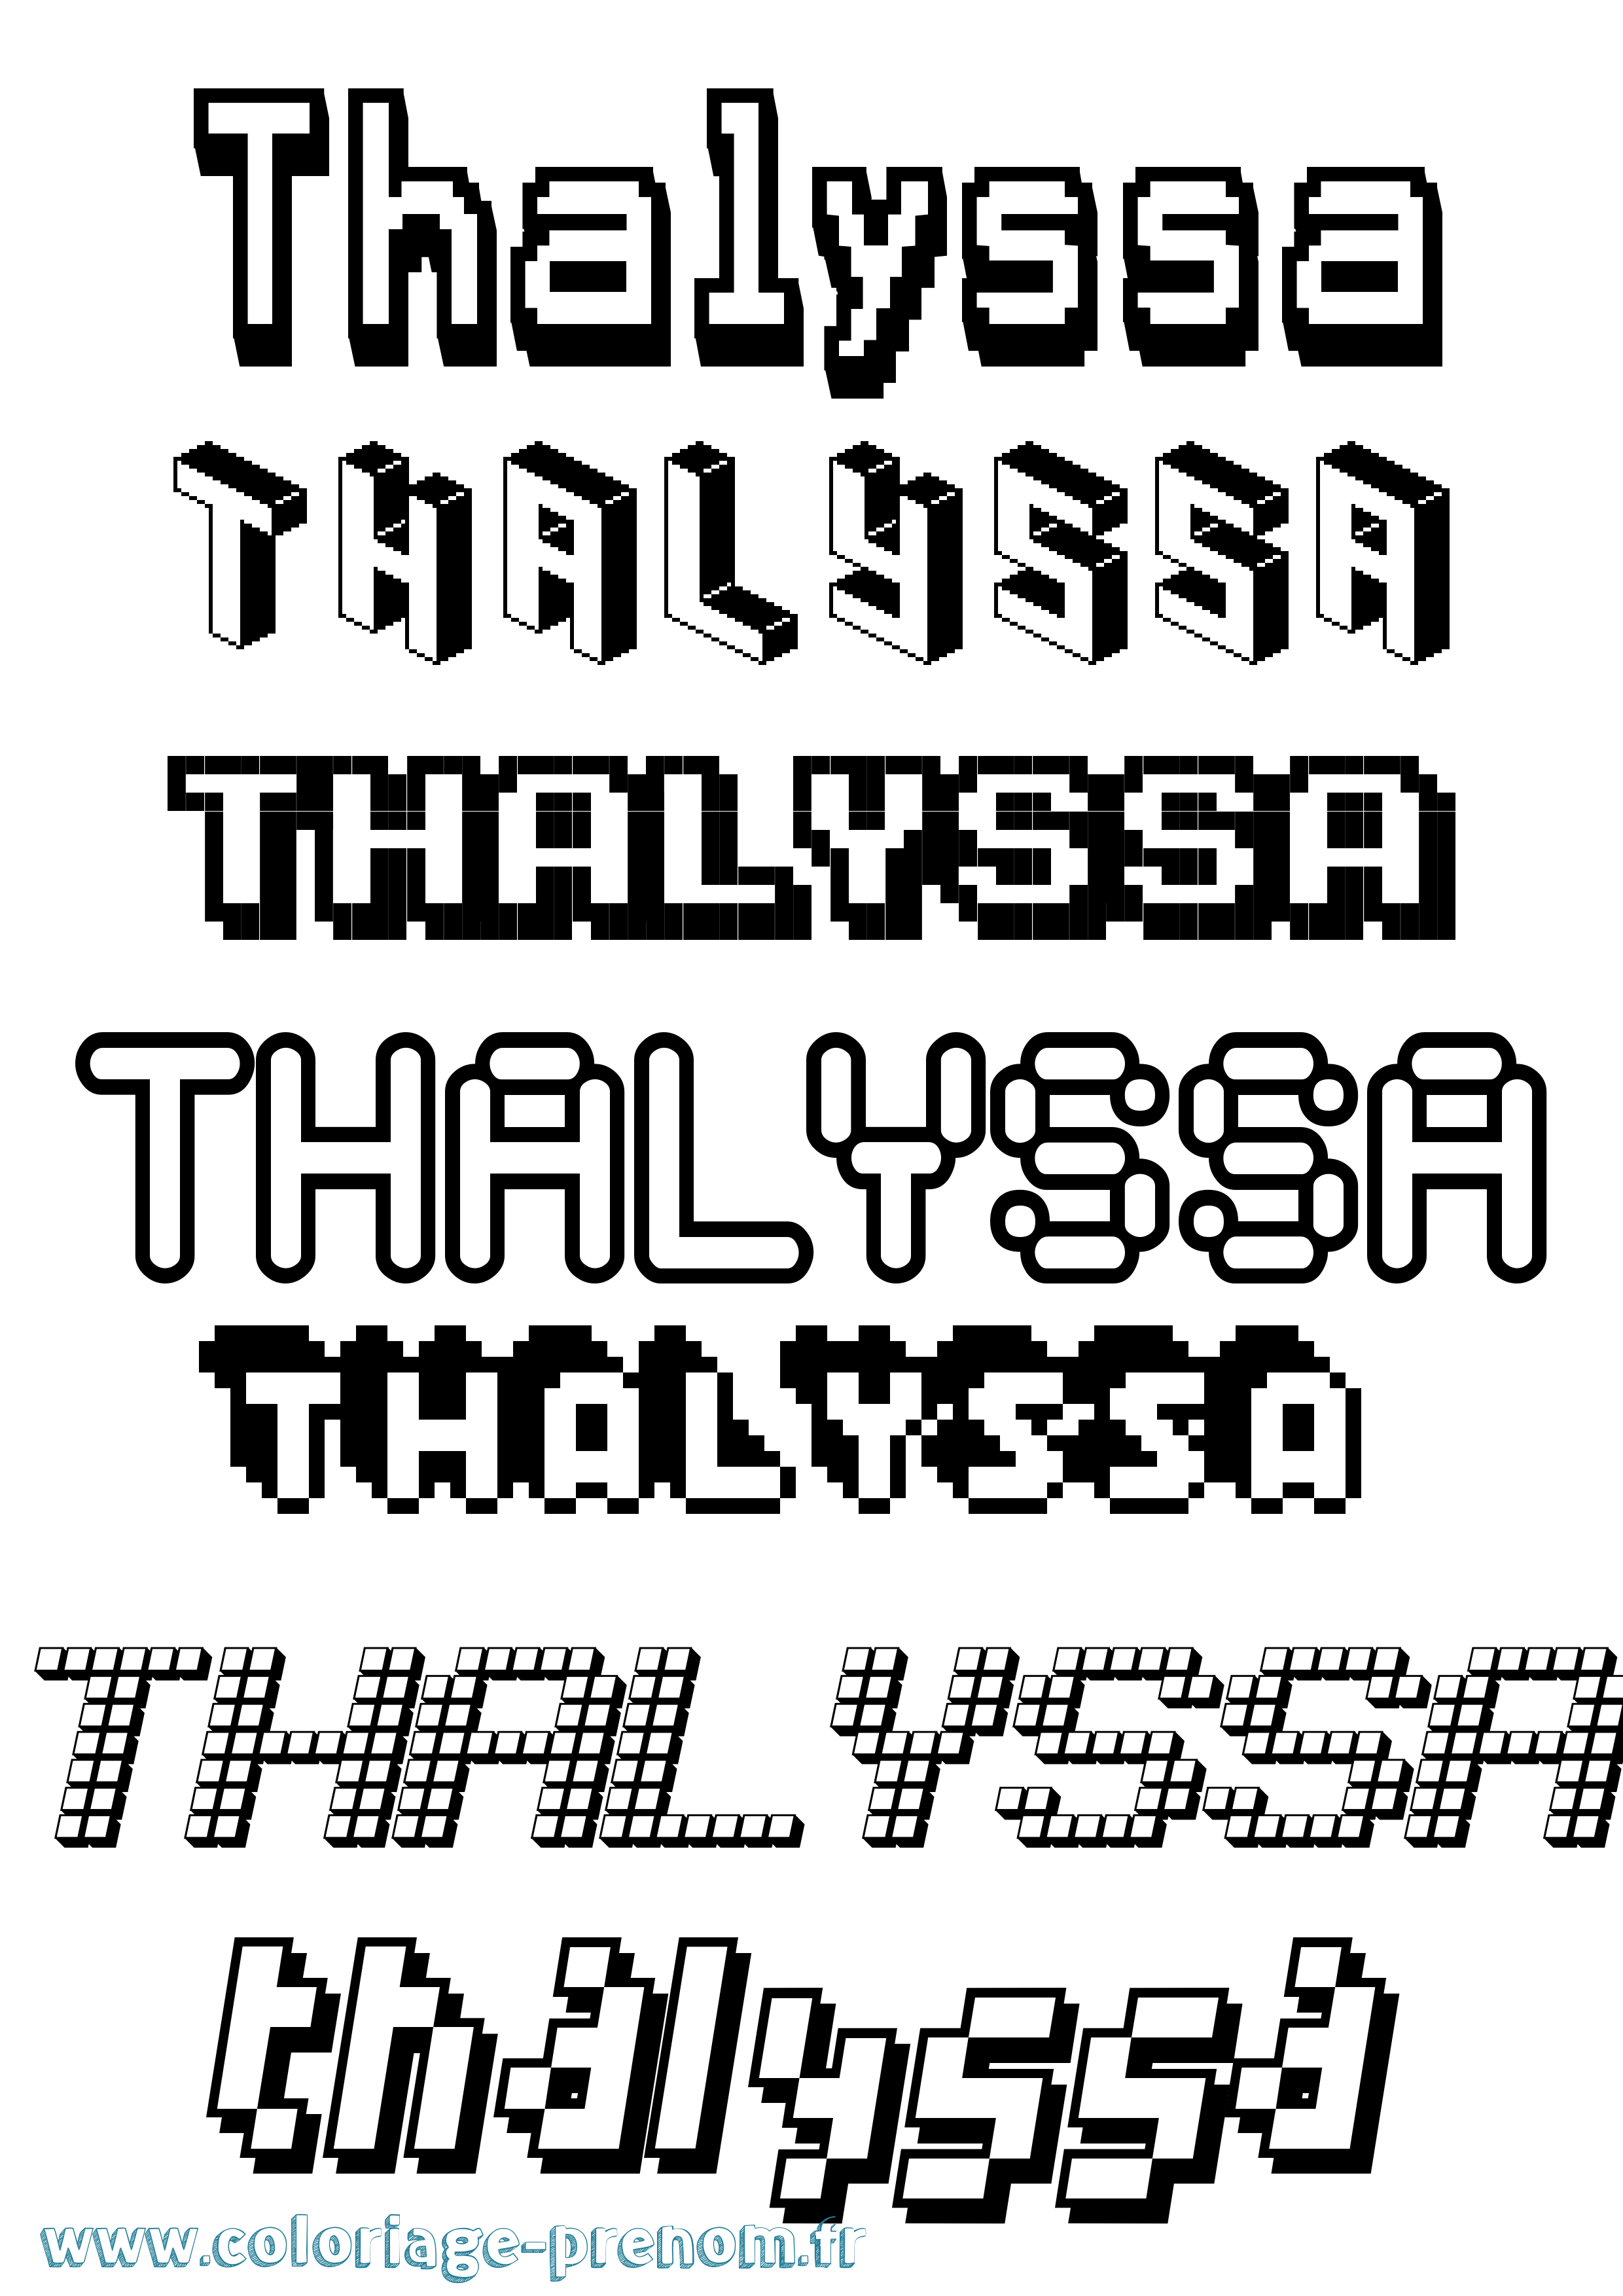 Coloriage prénom Thalyssa Pixel